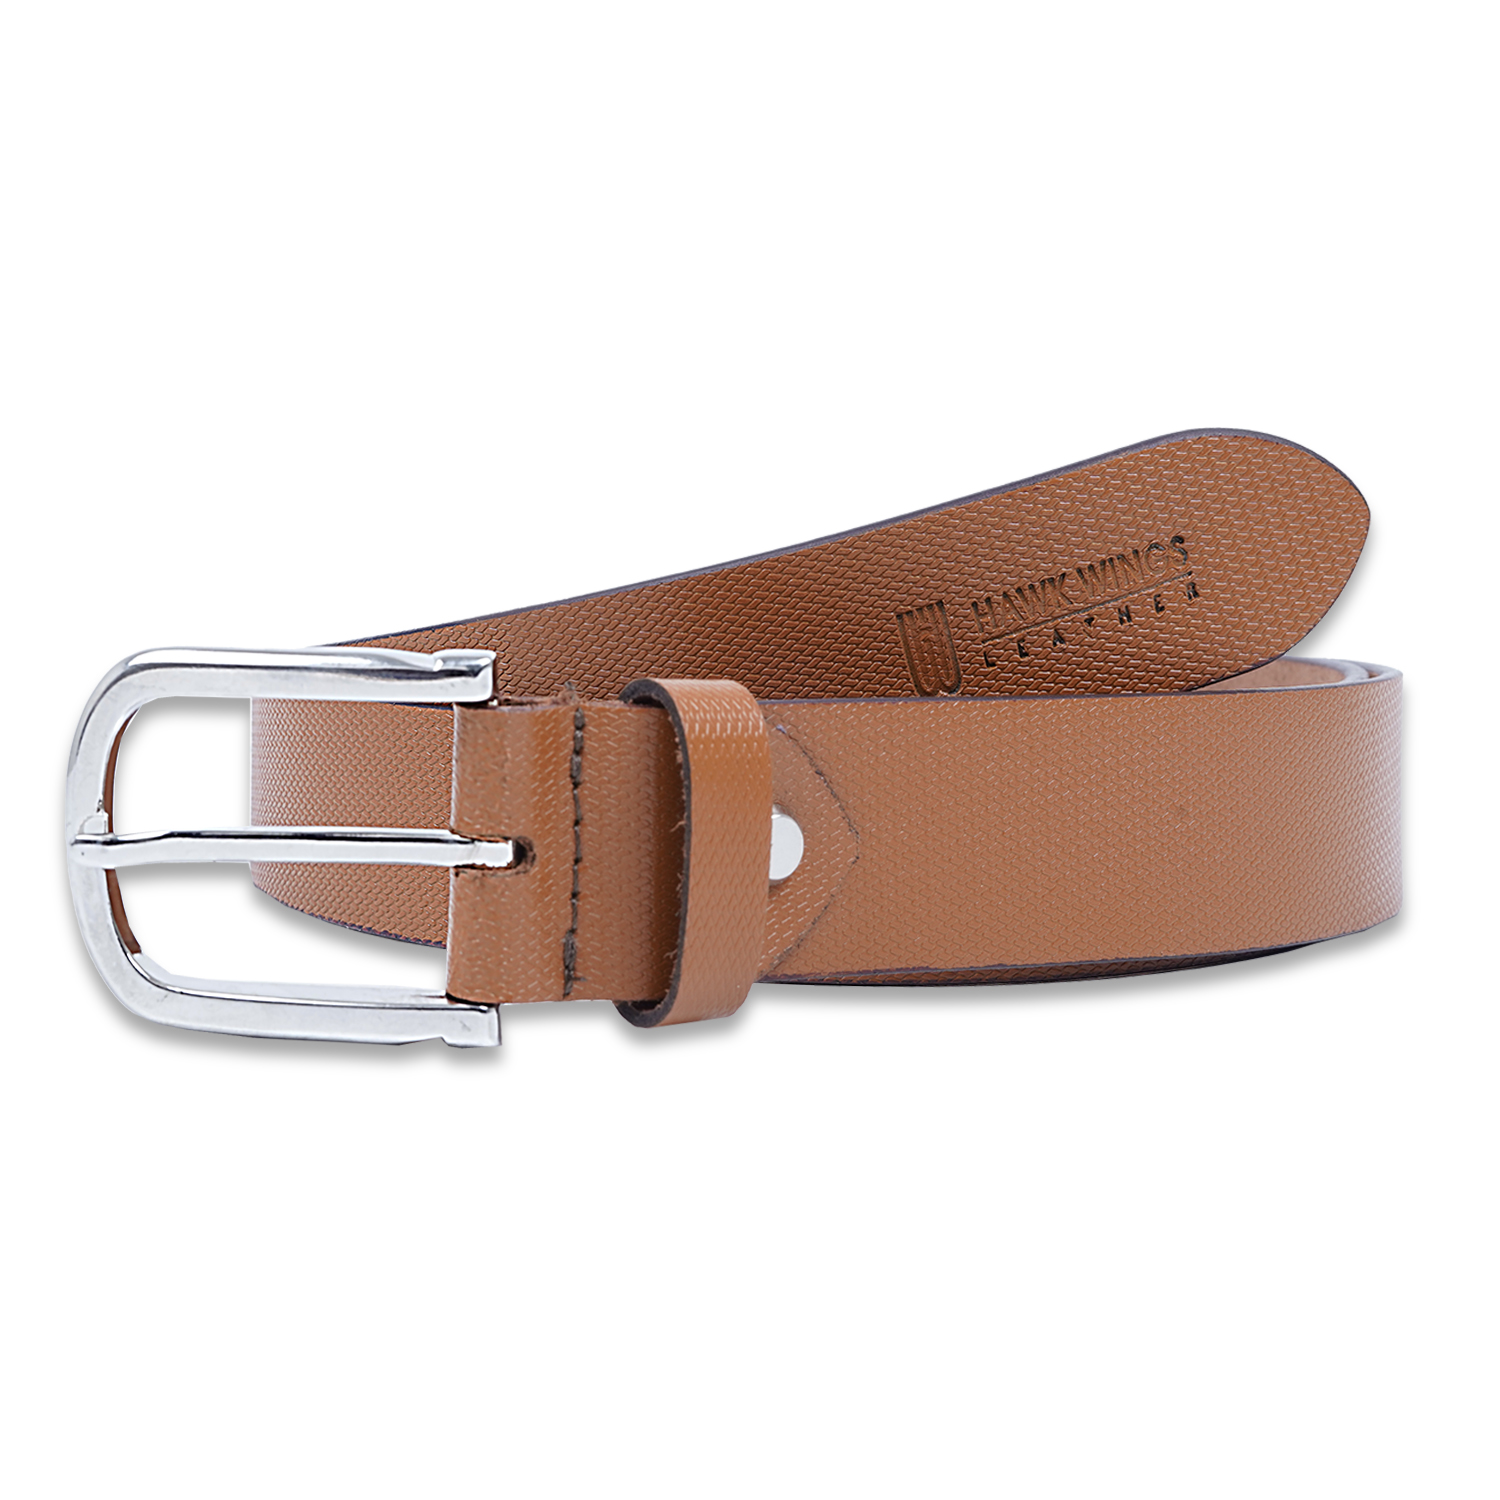  Genuine Leather Belt For Men's| Tan| Formal Belt